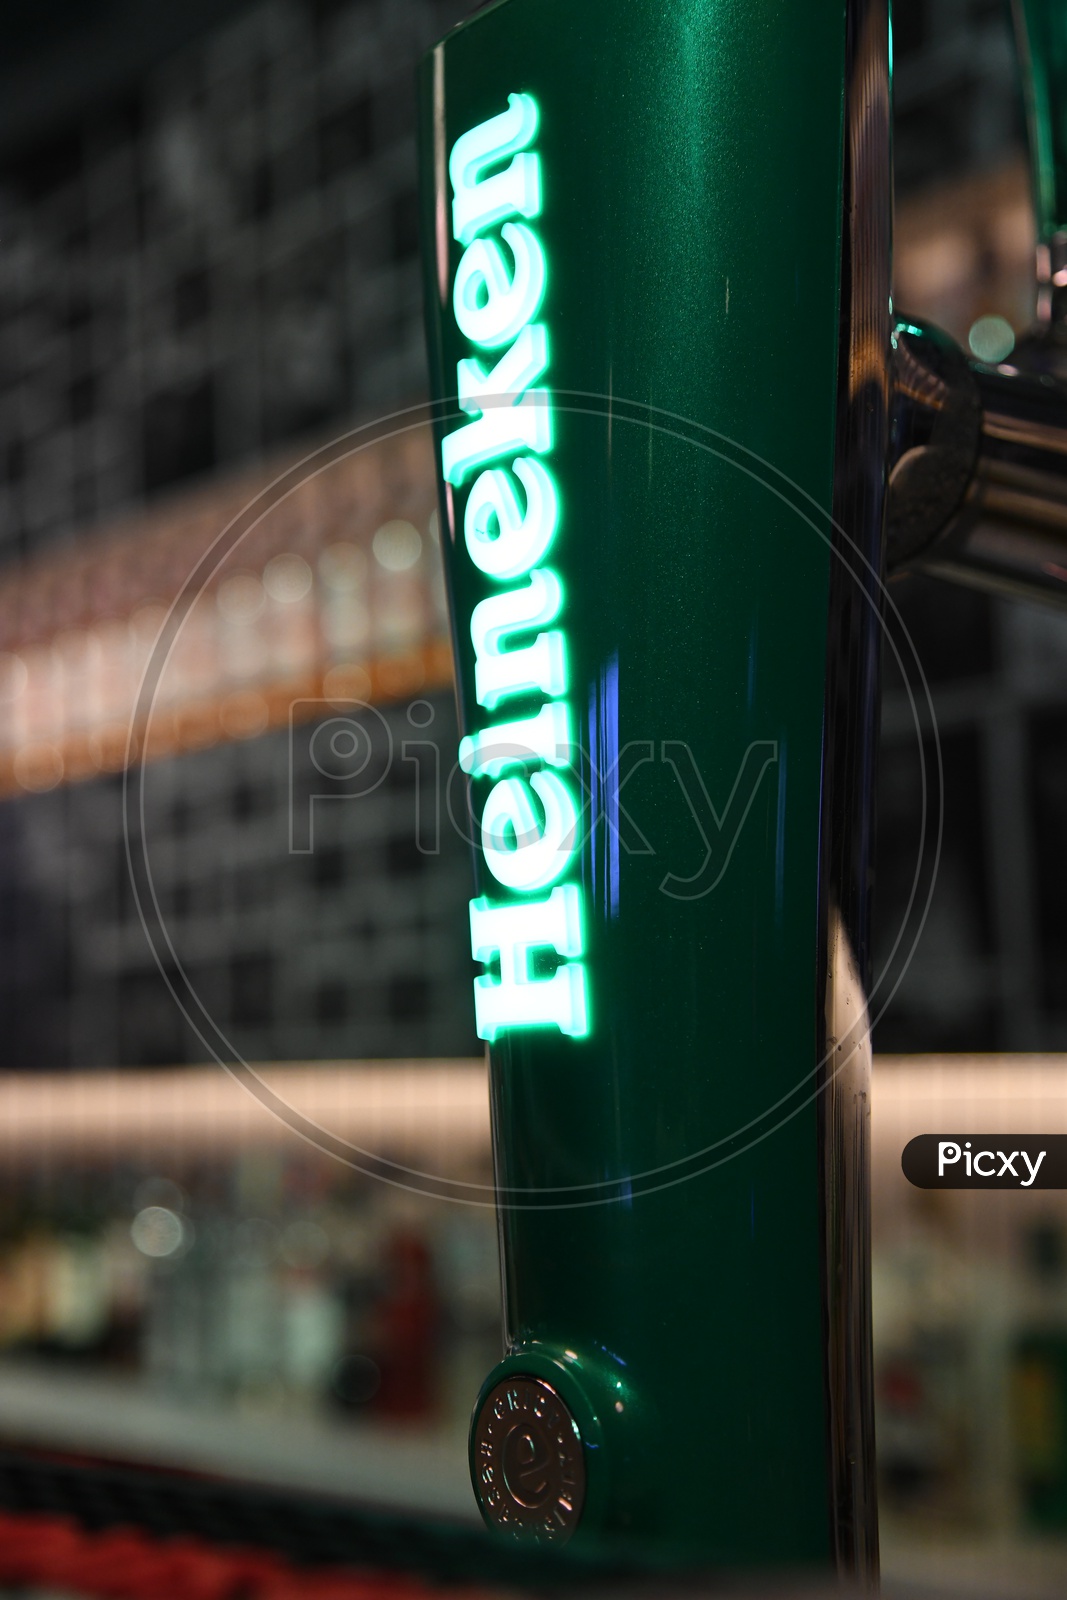 Heineken Beer Brand Name At a Bar Counter